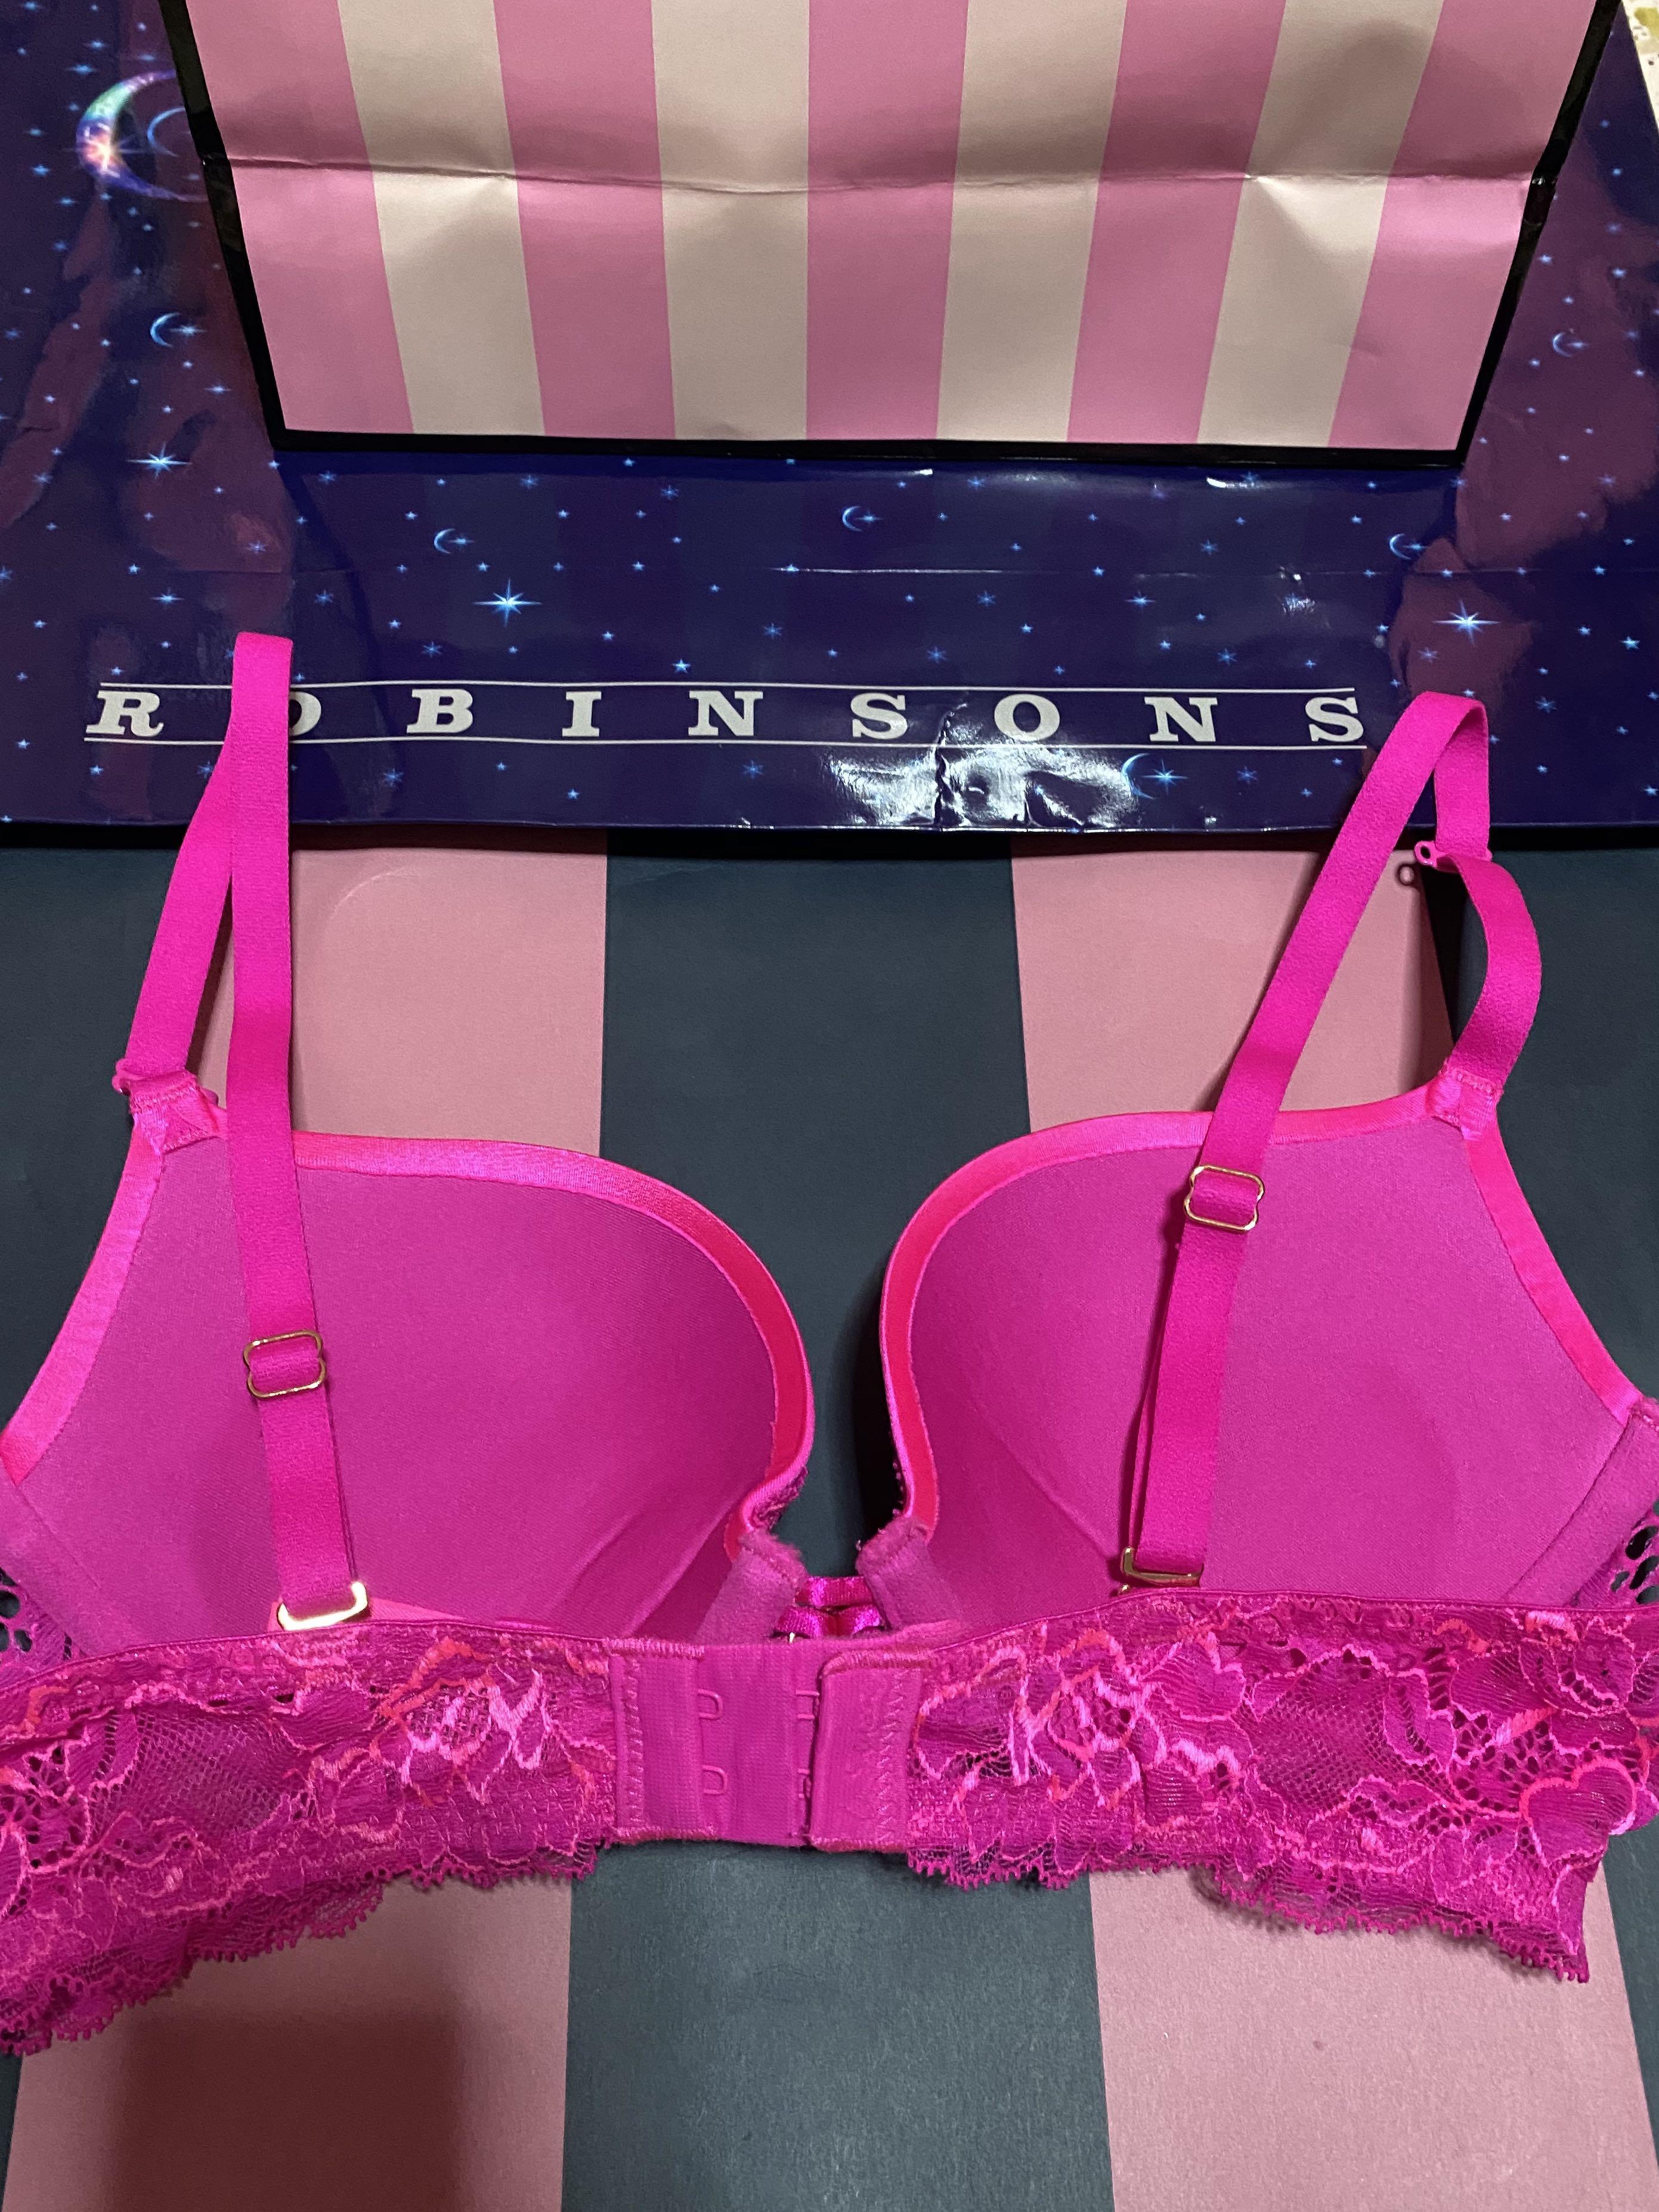 SEXY LA SENZA Black & Pink Corset Lace Peep Show Bra, New, 34C £20.99 -  PicClick UK